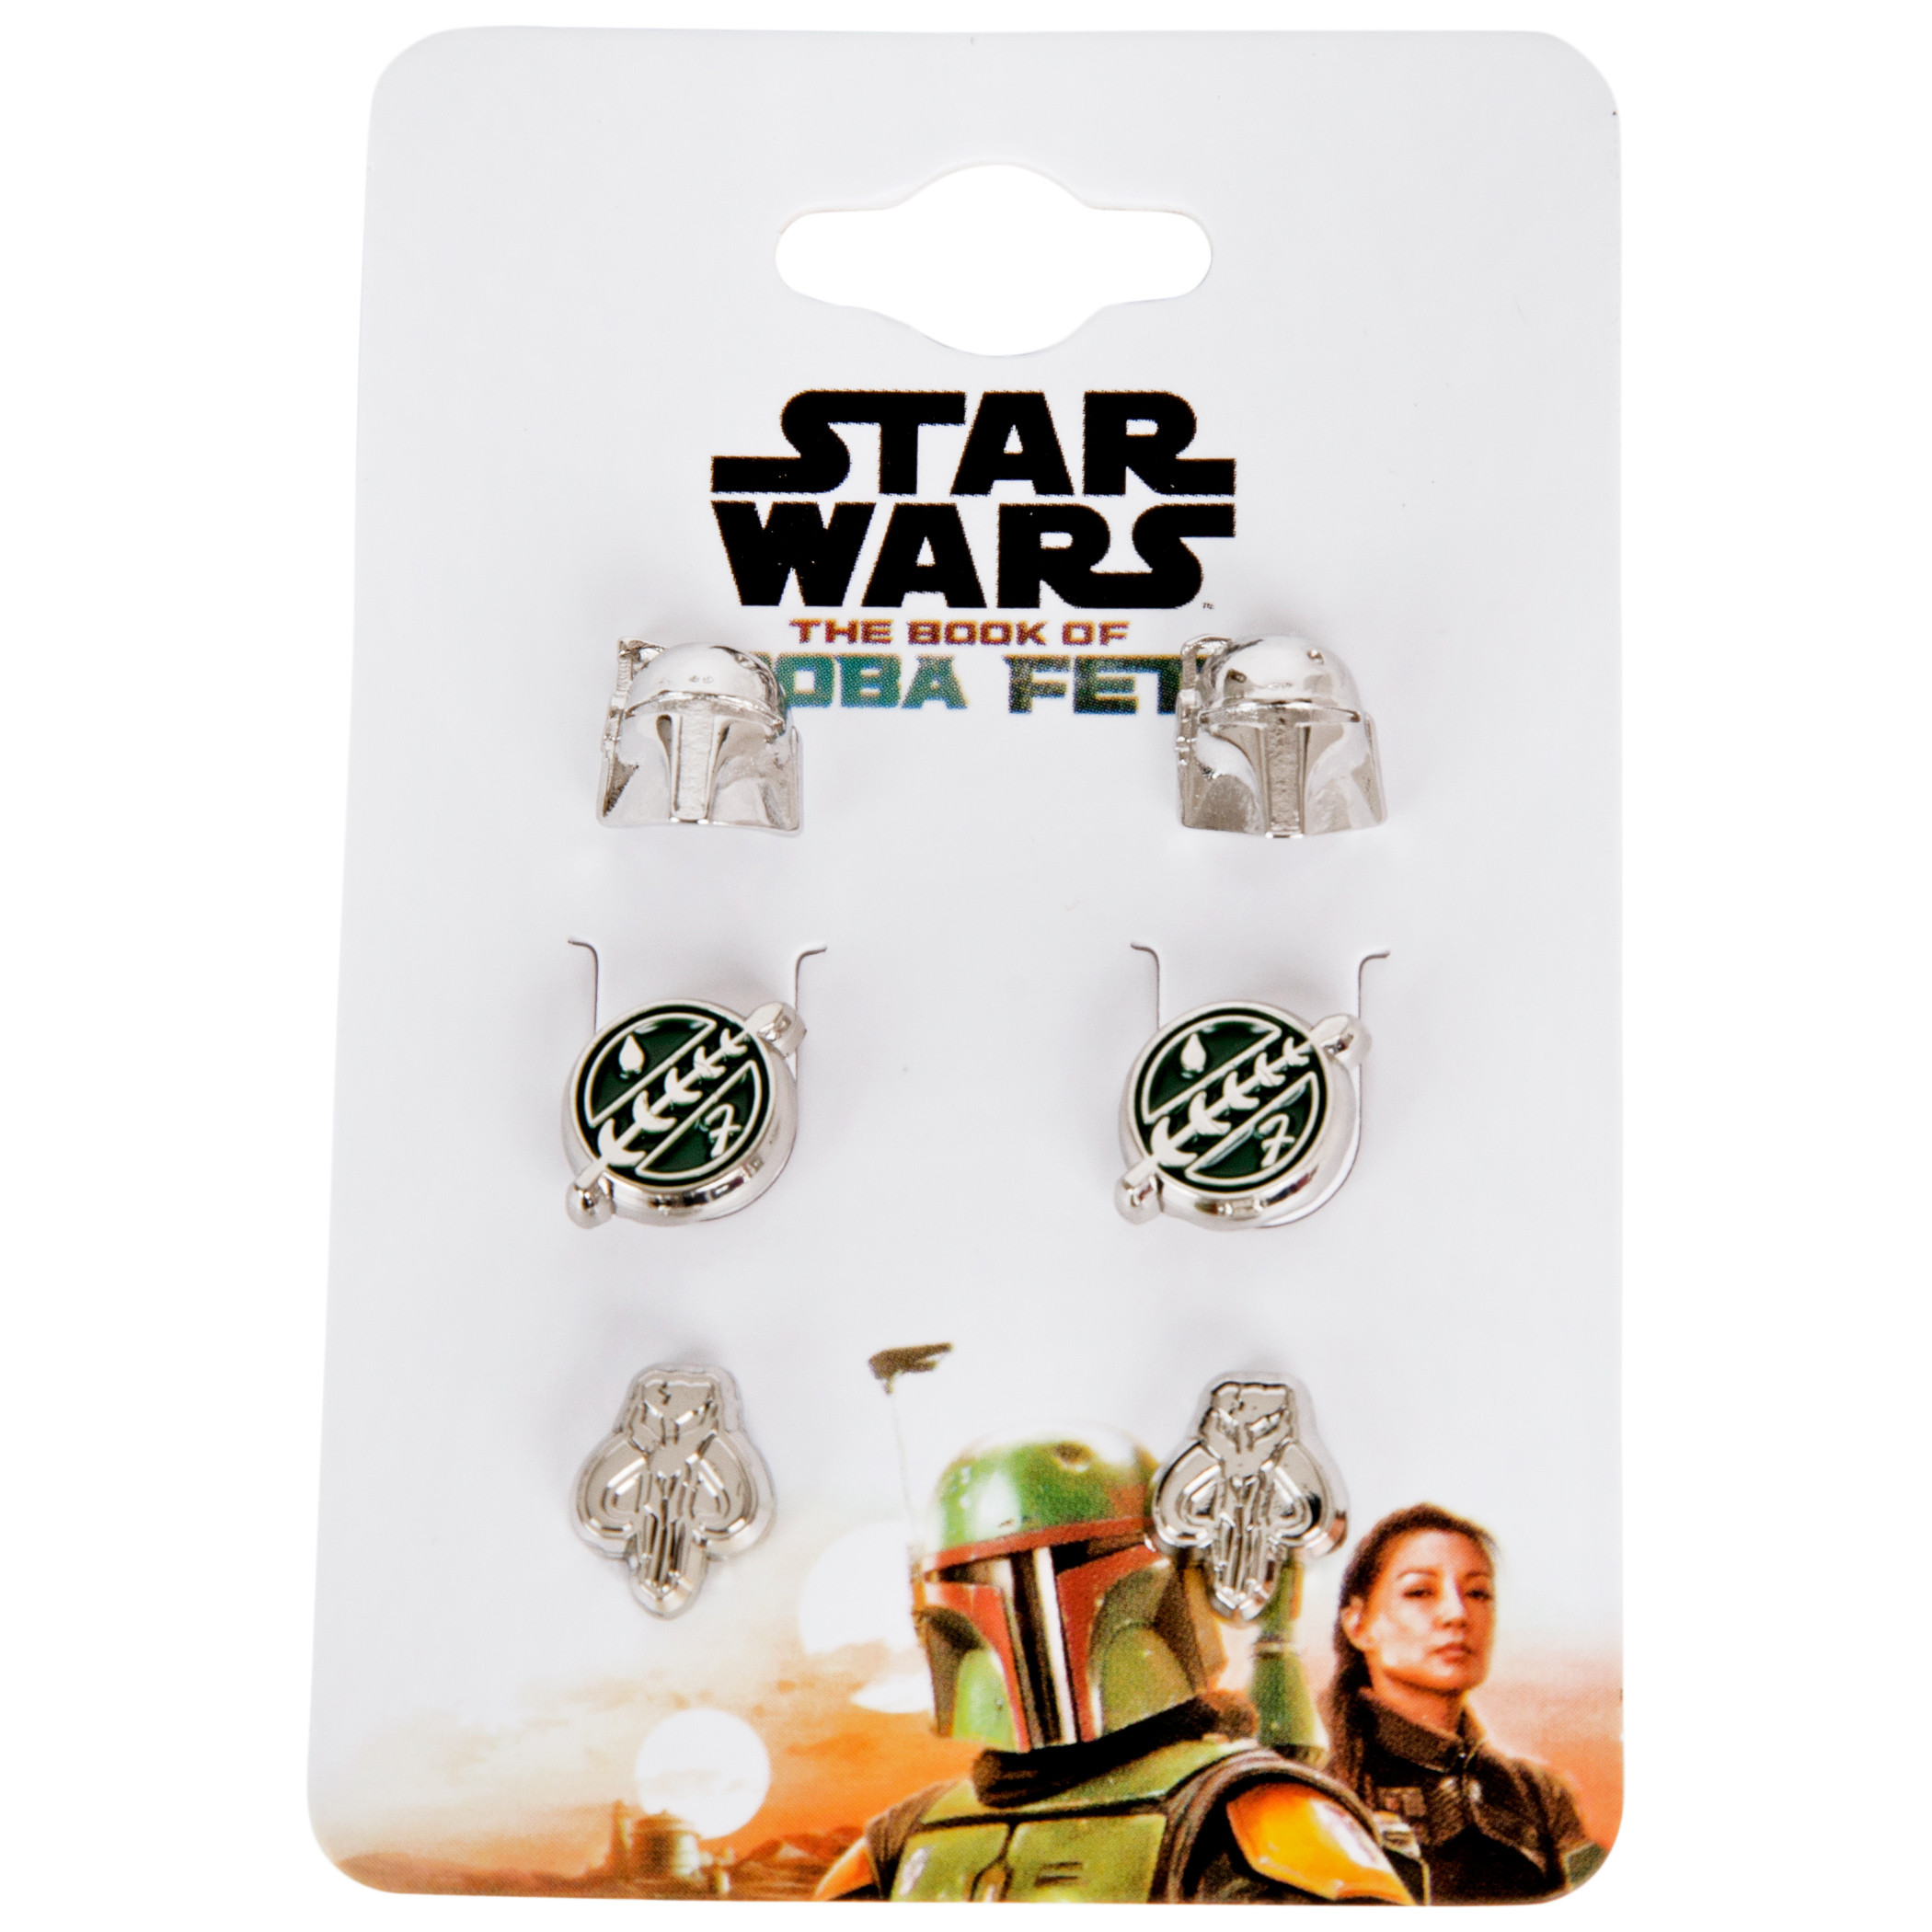 Star Wars Boba Fett Helmet, Crest and Mythosaur Earrings 3-Pack